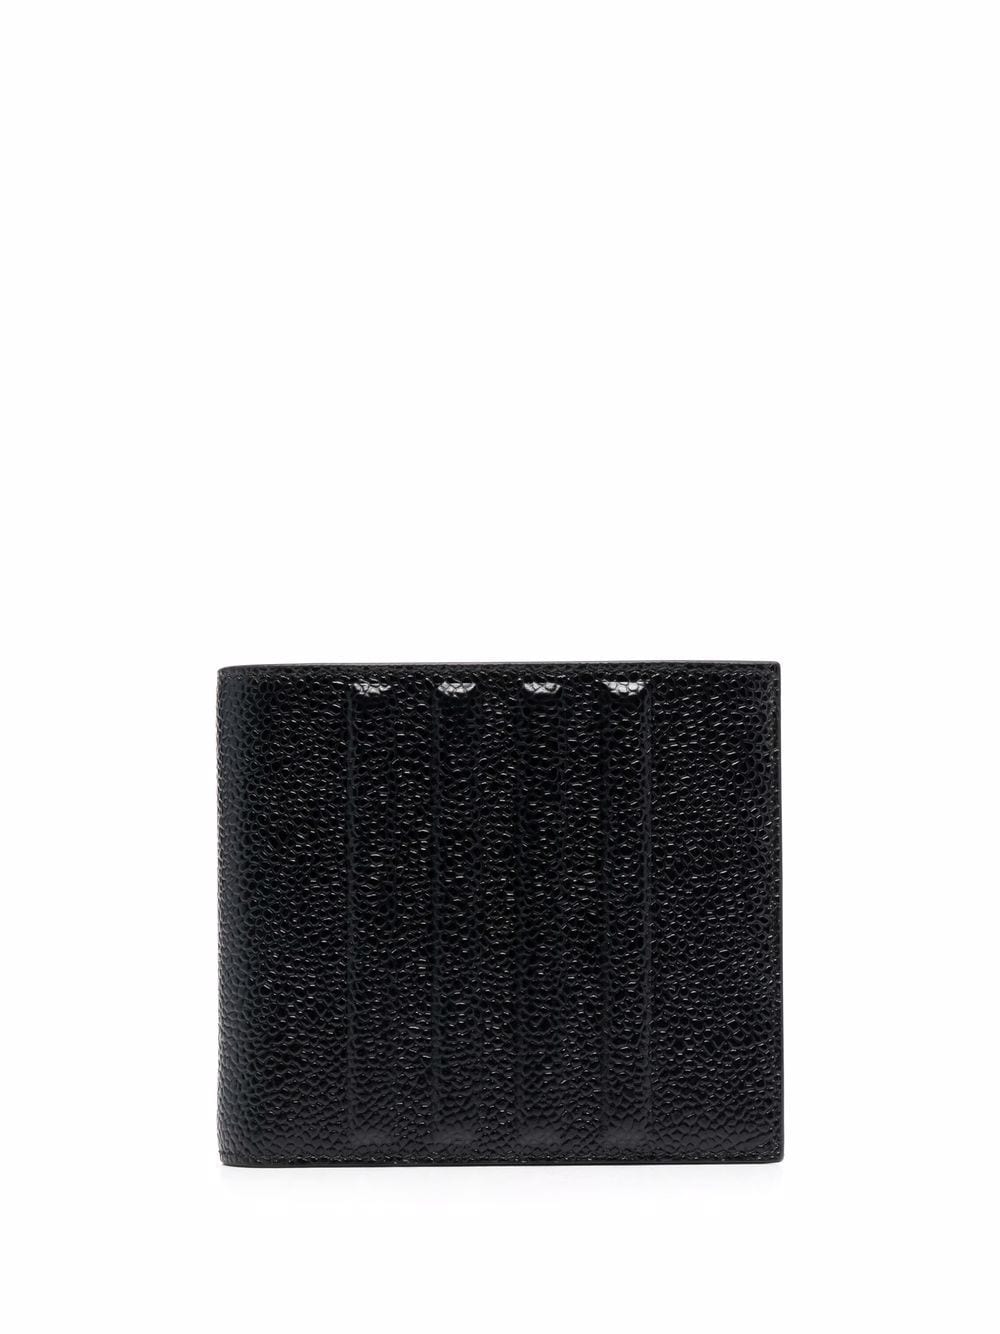 Thom Browne billfold leather wallet - Black von Thom Browne